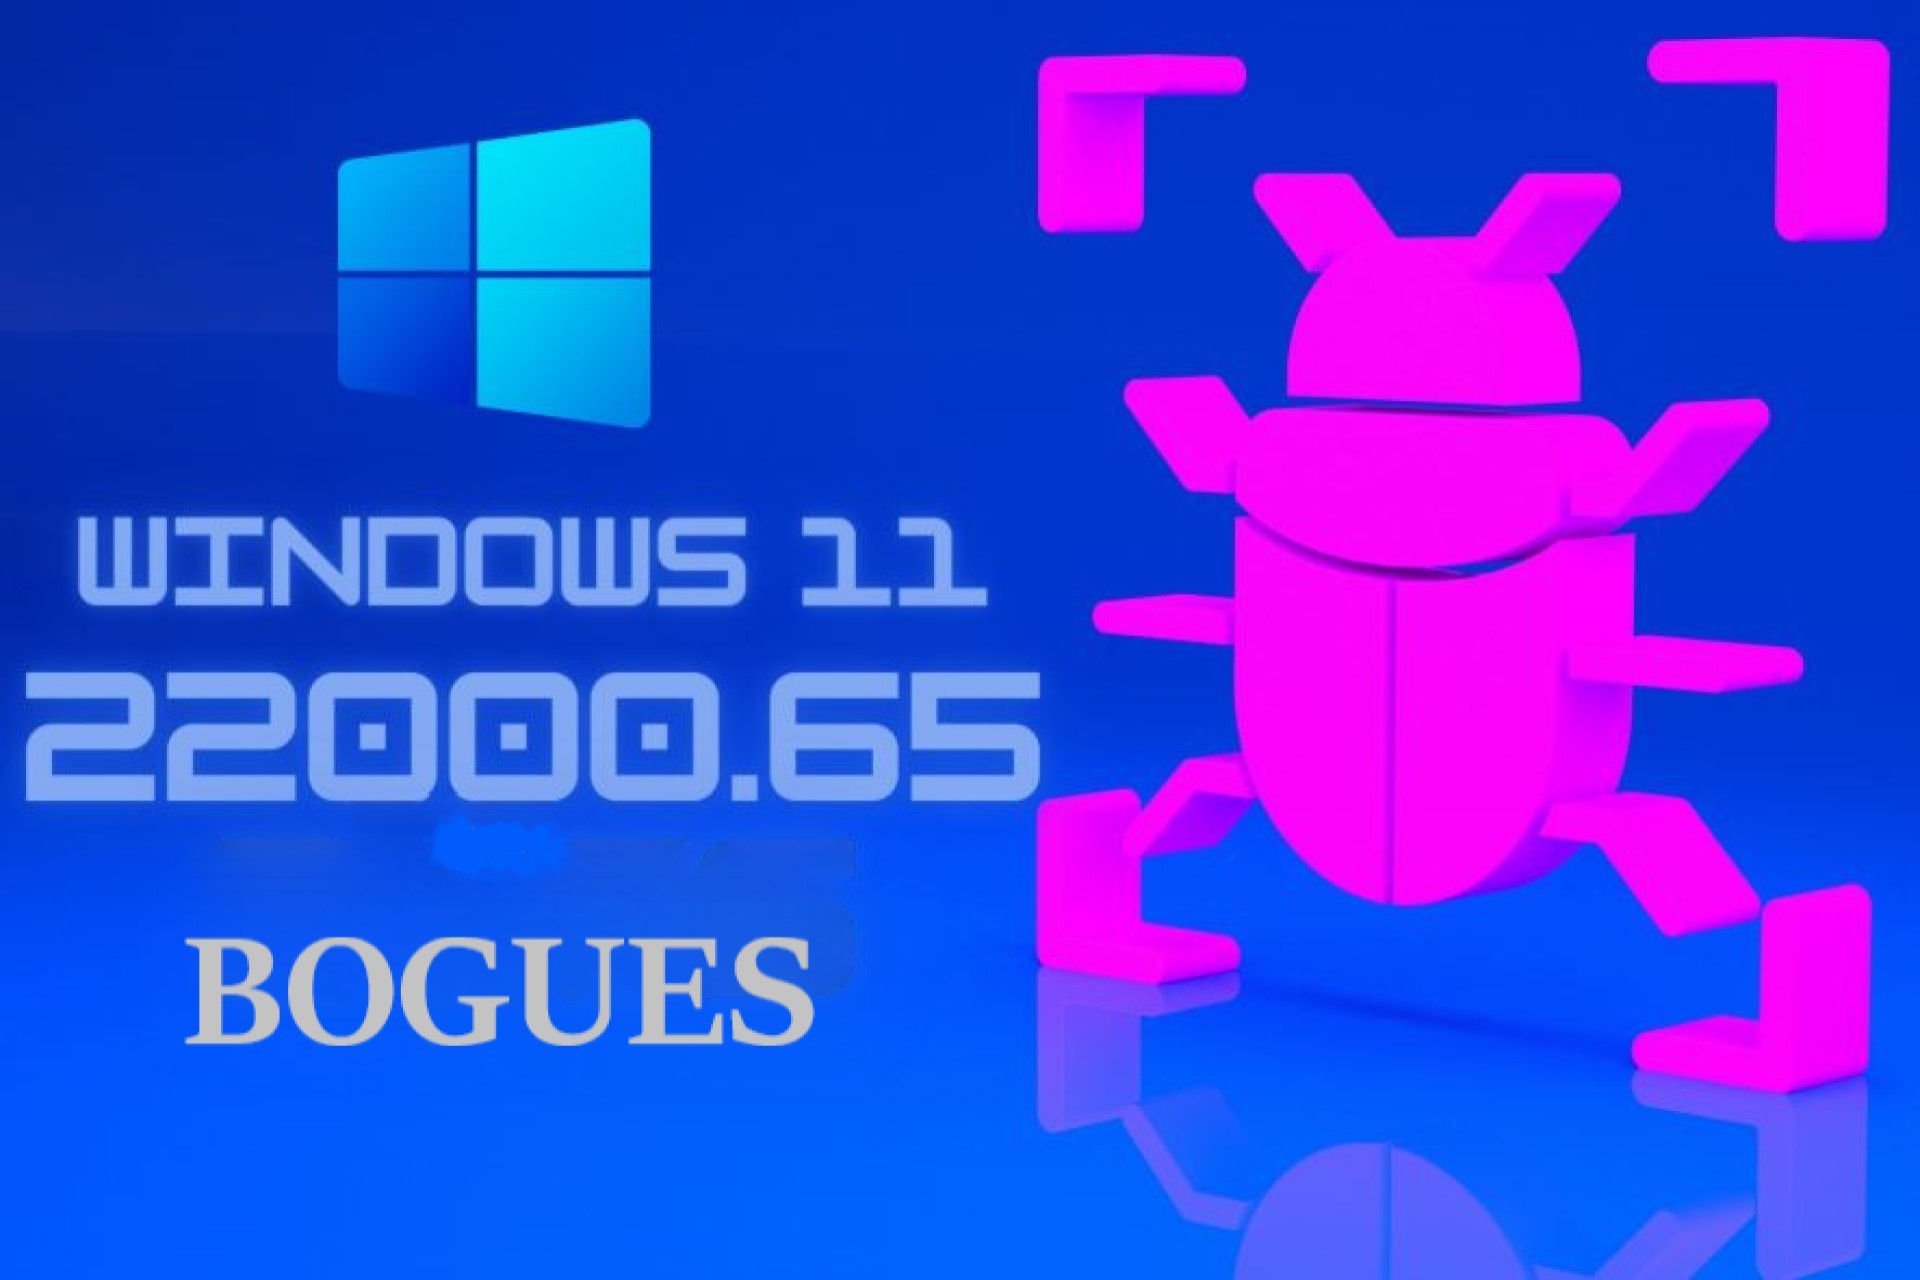 Windows 11 build 22000.65 problèmes